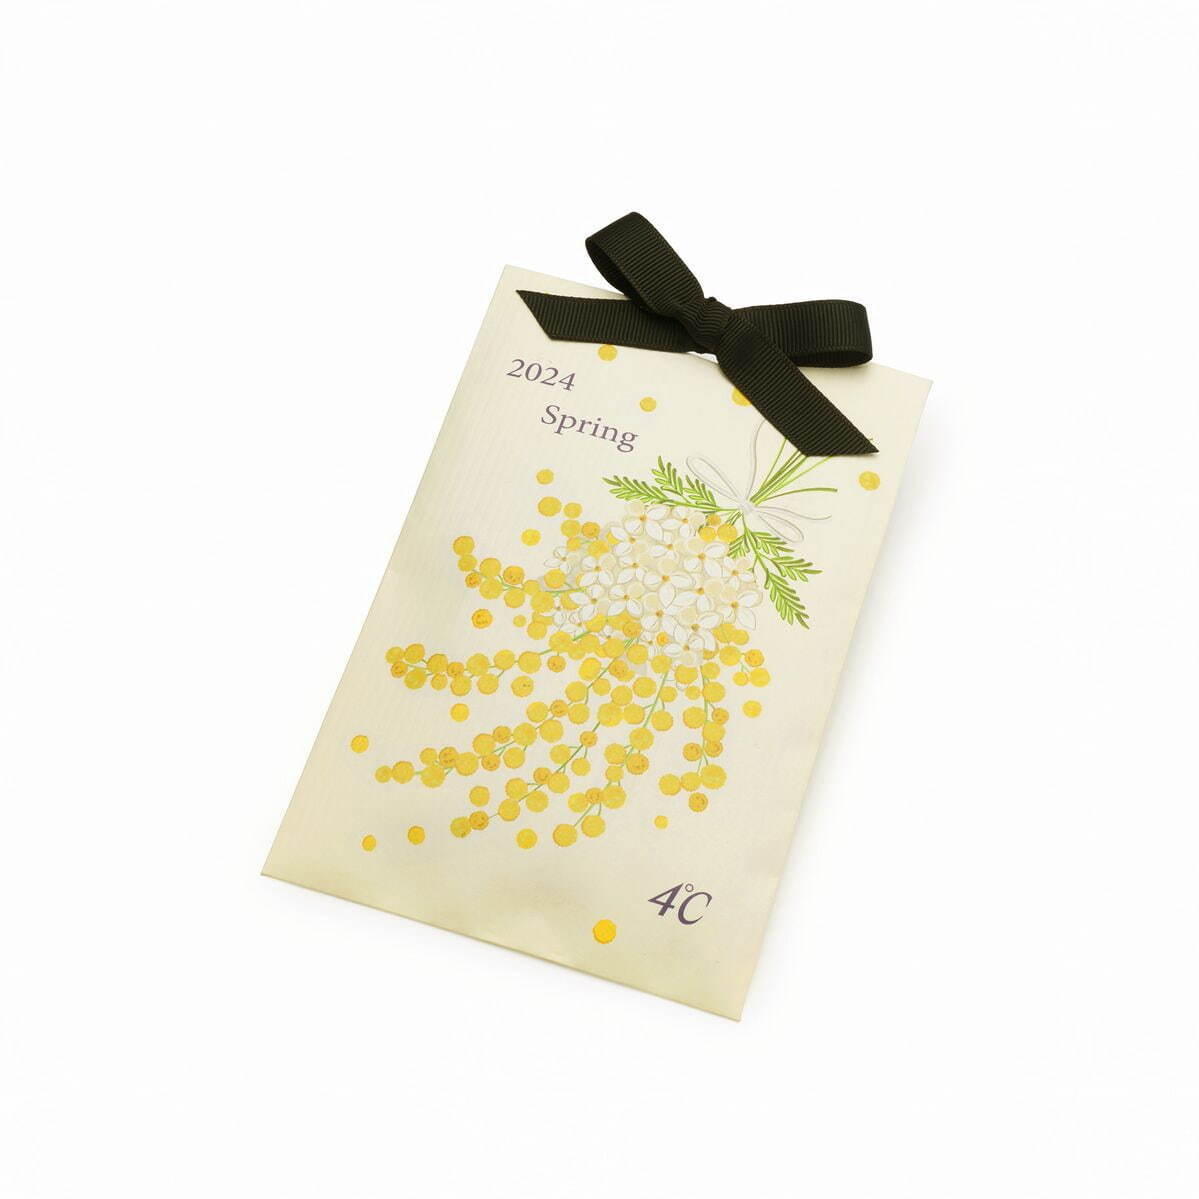 4℃の春ジュエリー、ミモザを表現したレモンクォーツのネックレス＆ライラックの花びら着想ピアスなど｜写真2